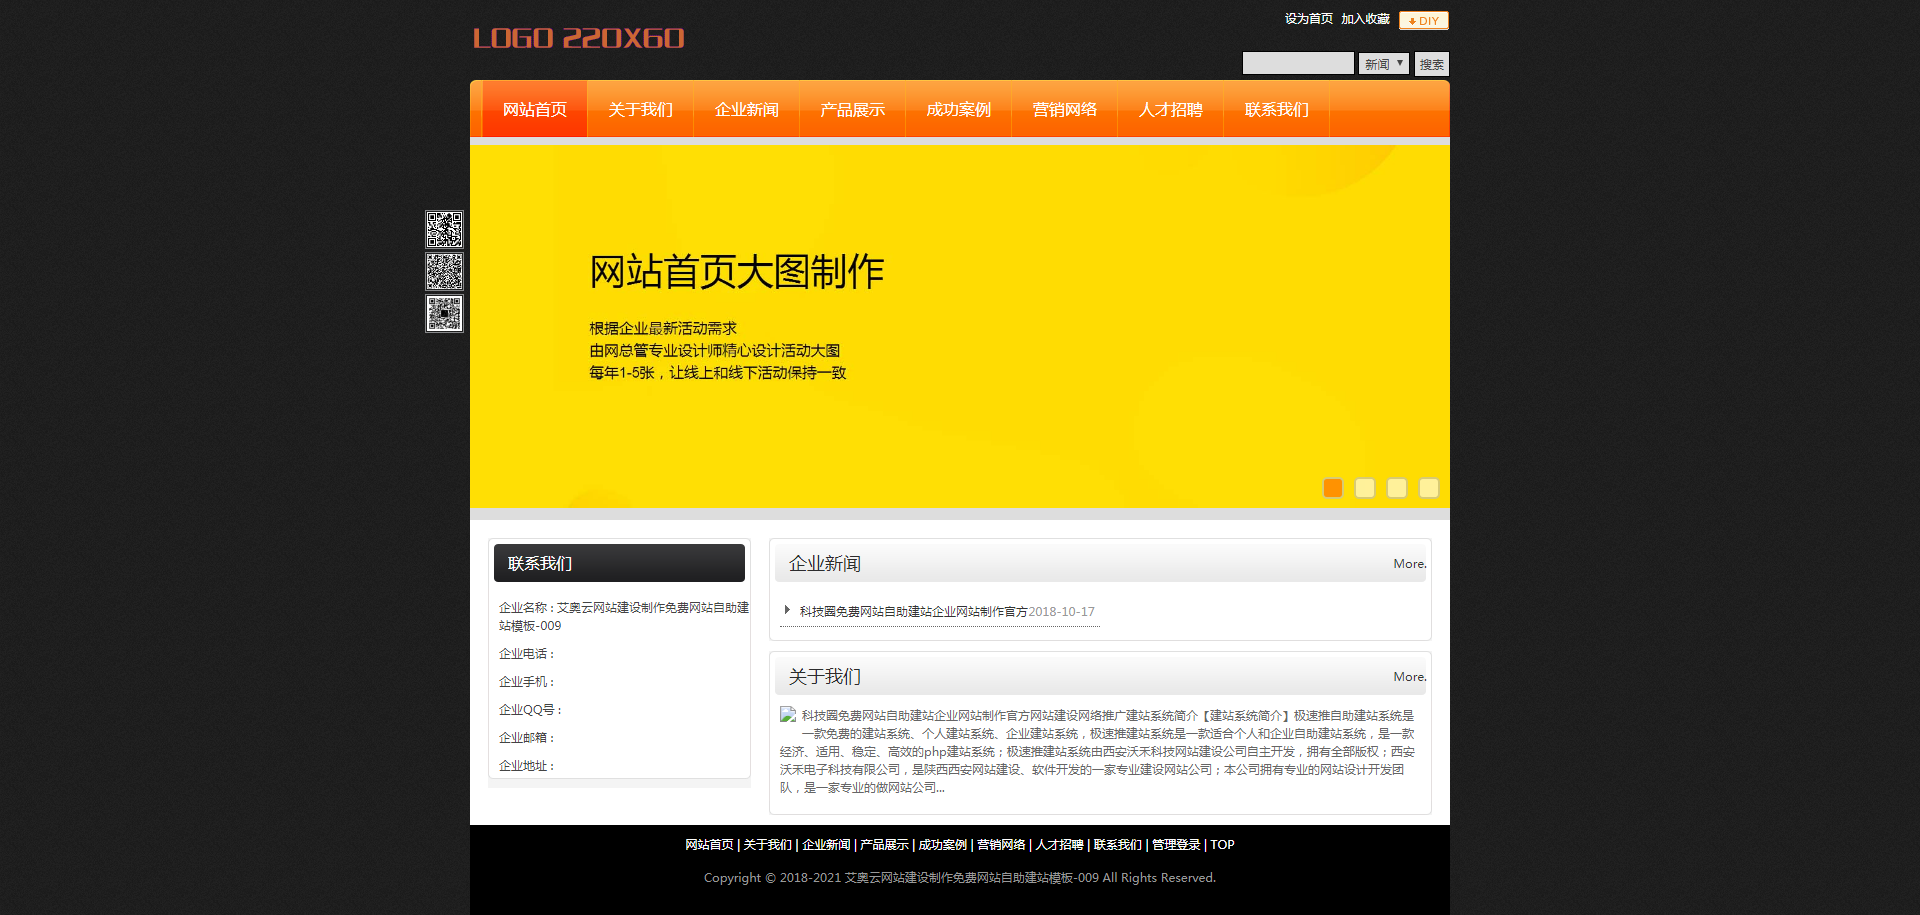 活力橙经典窄版免费网站个人企业自助建站模板-009#网站建设 (1).png